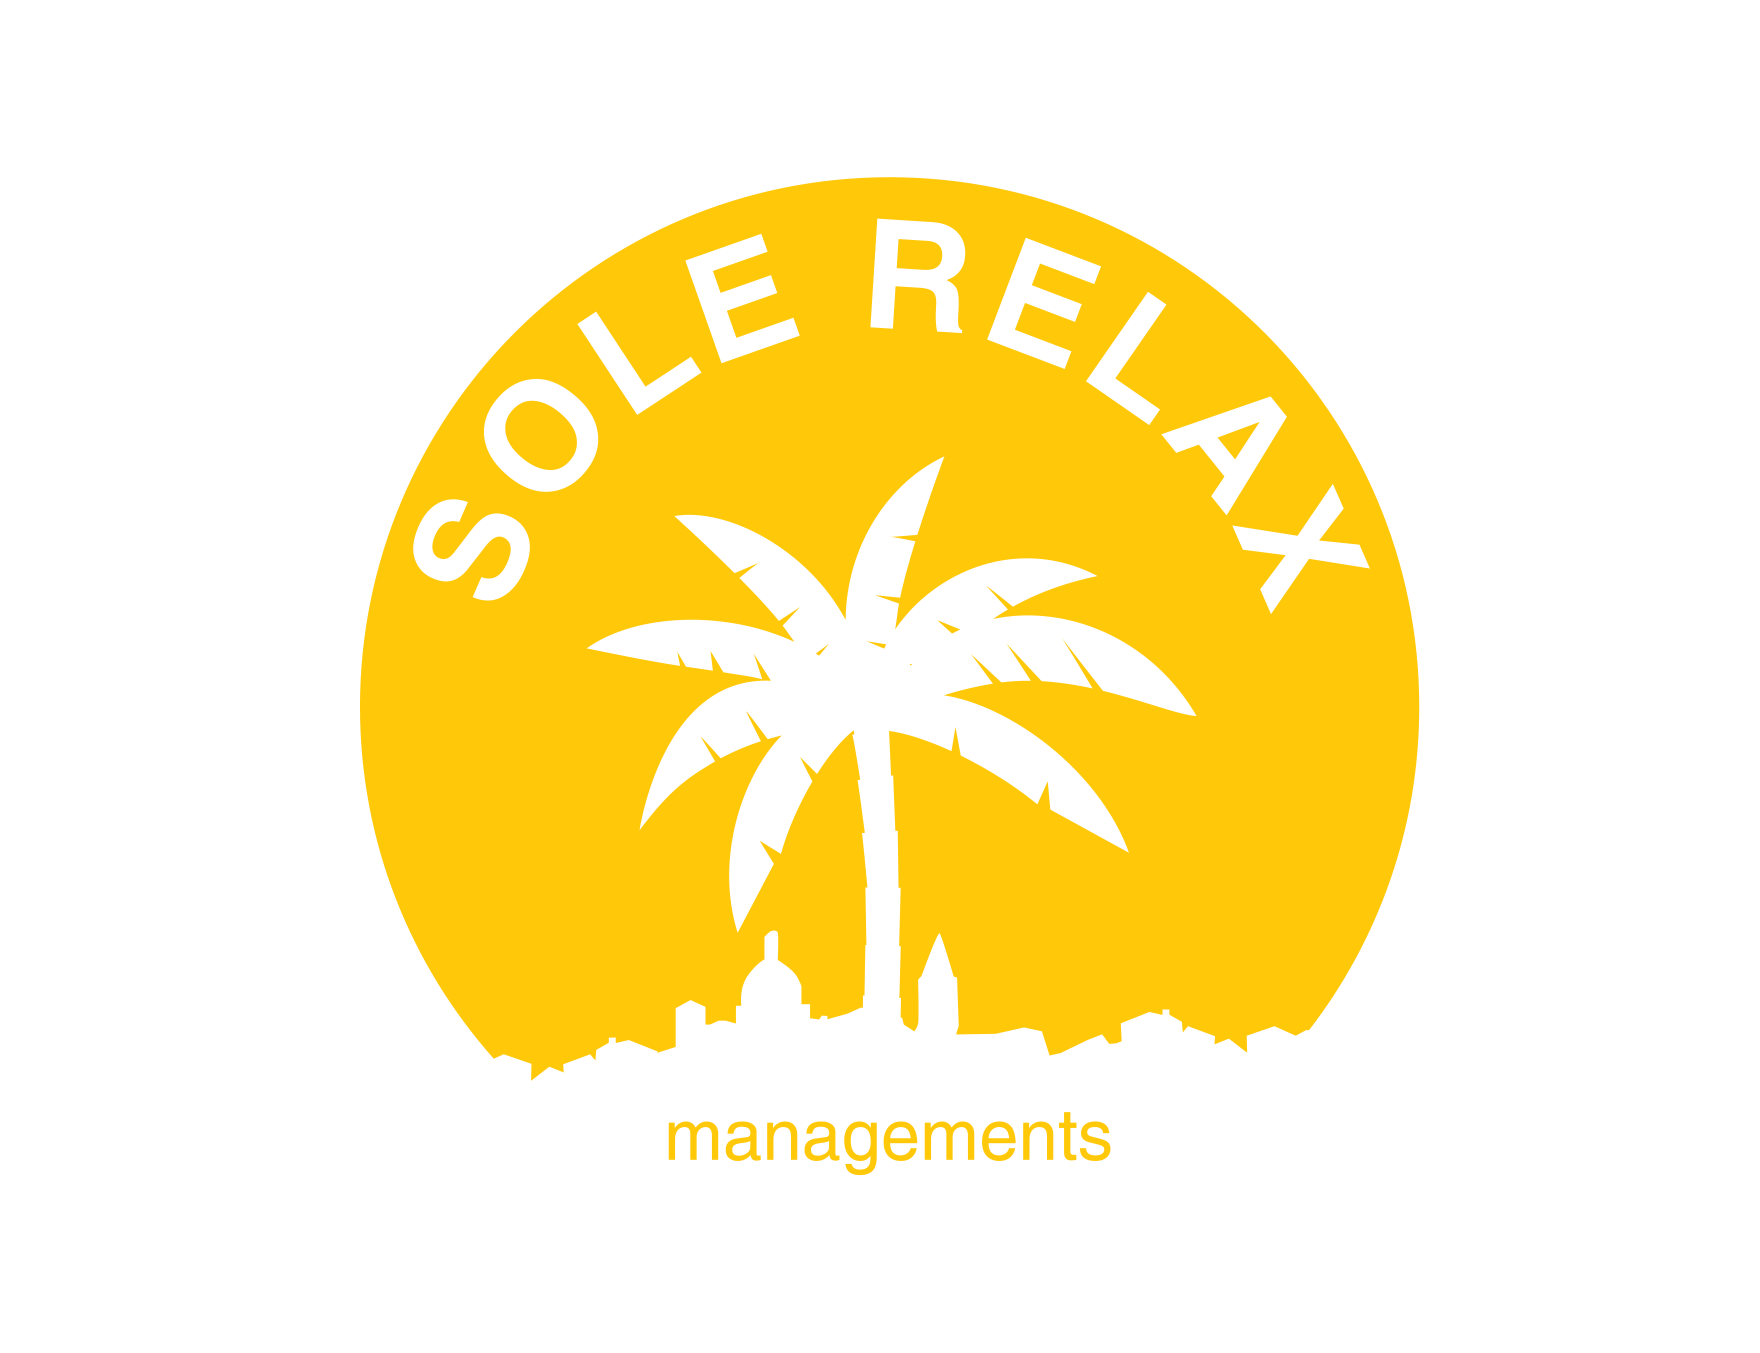 Sole Relax Managements - gestione attività e bar